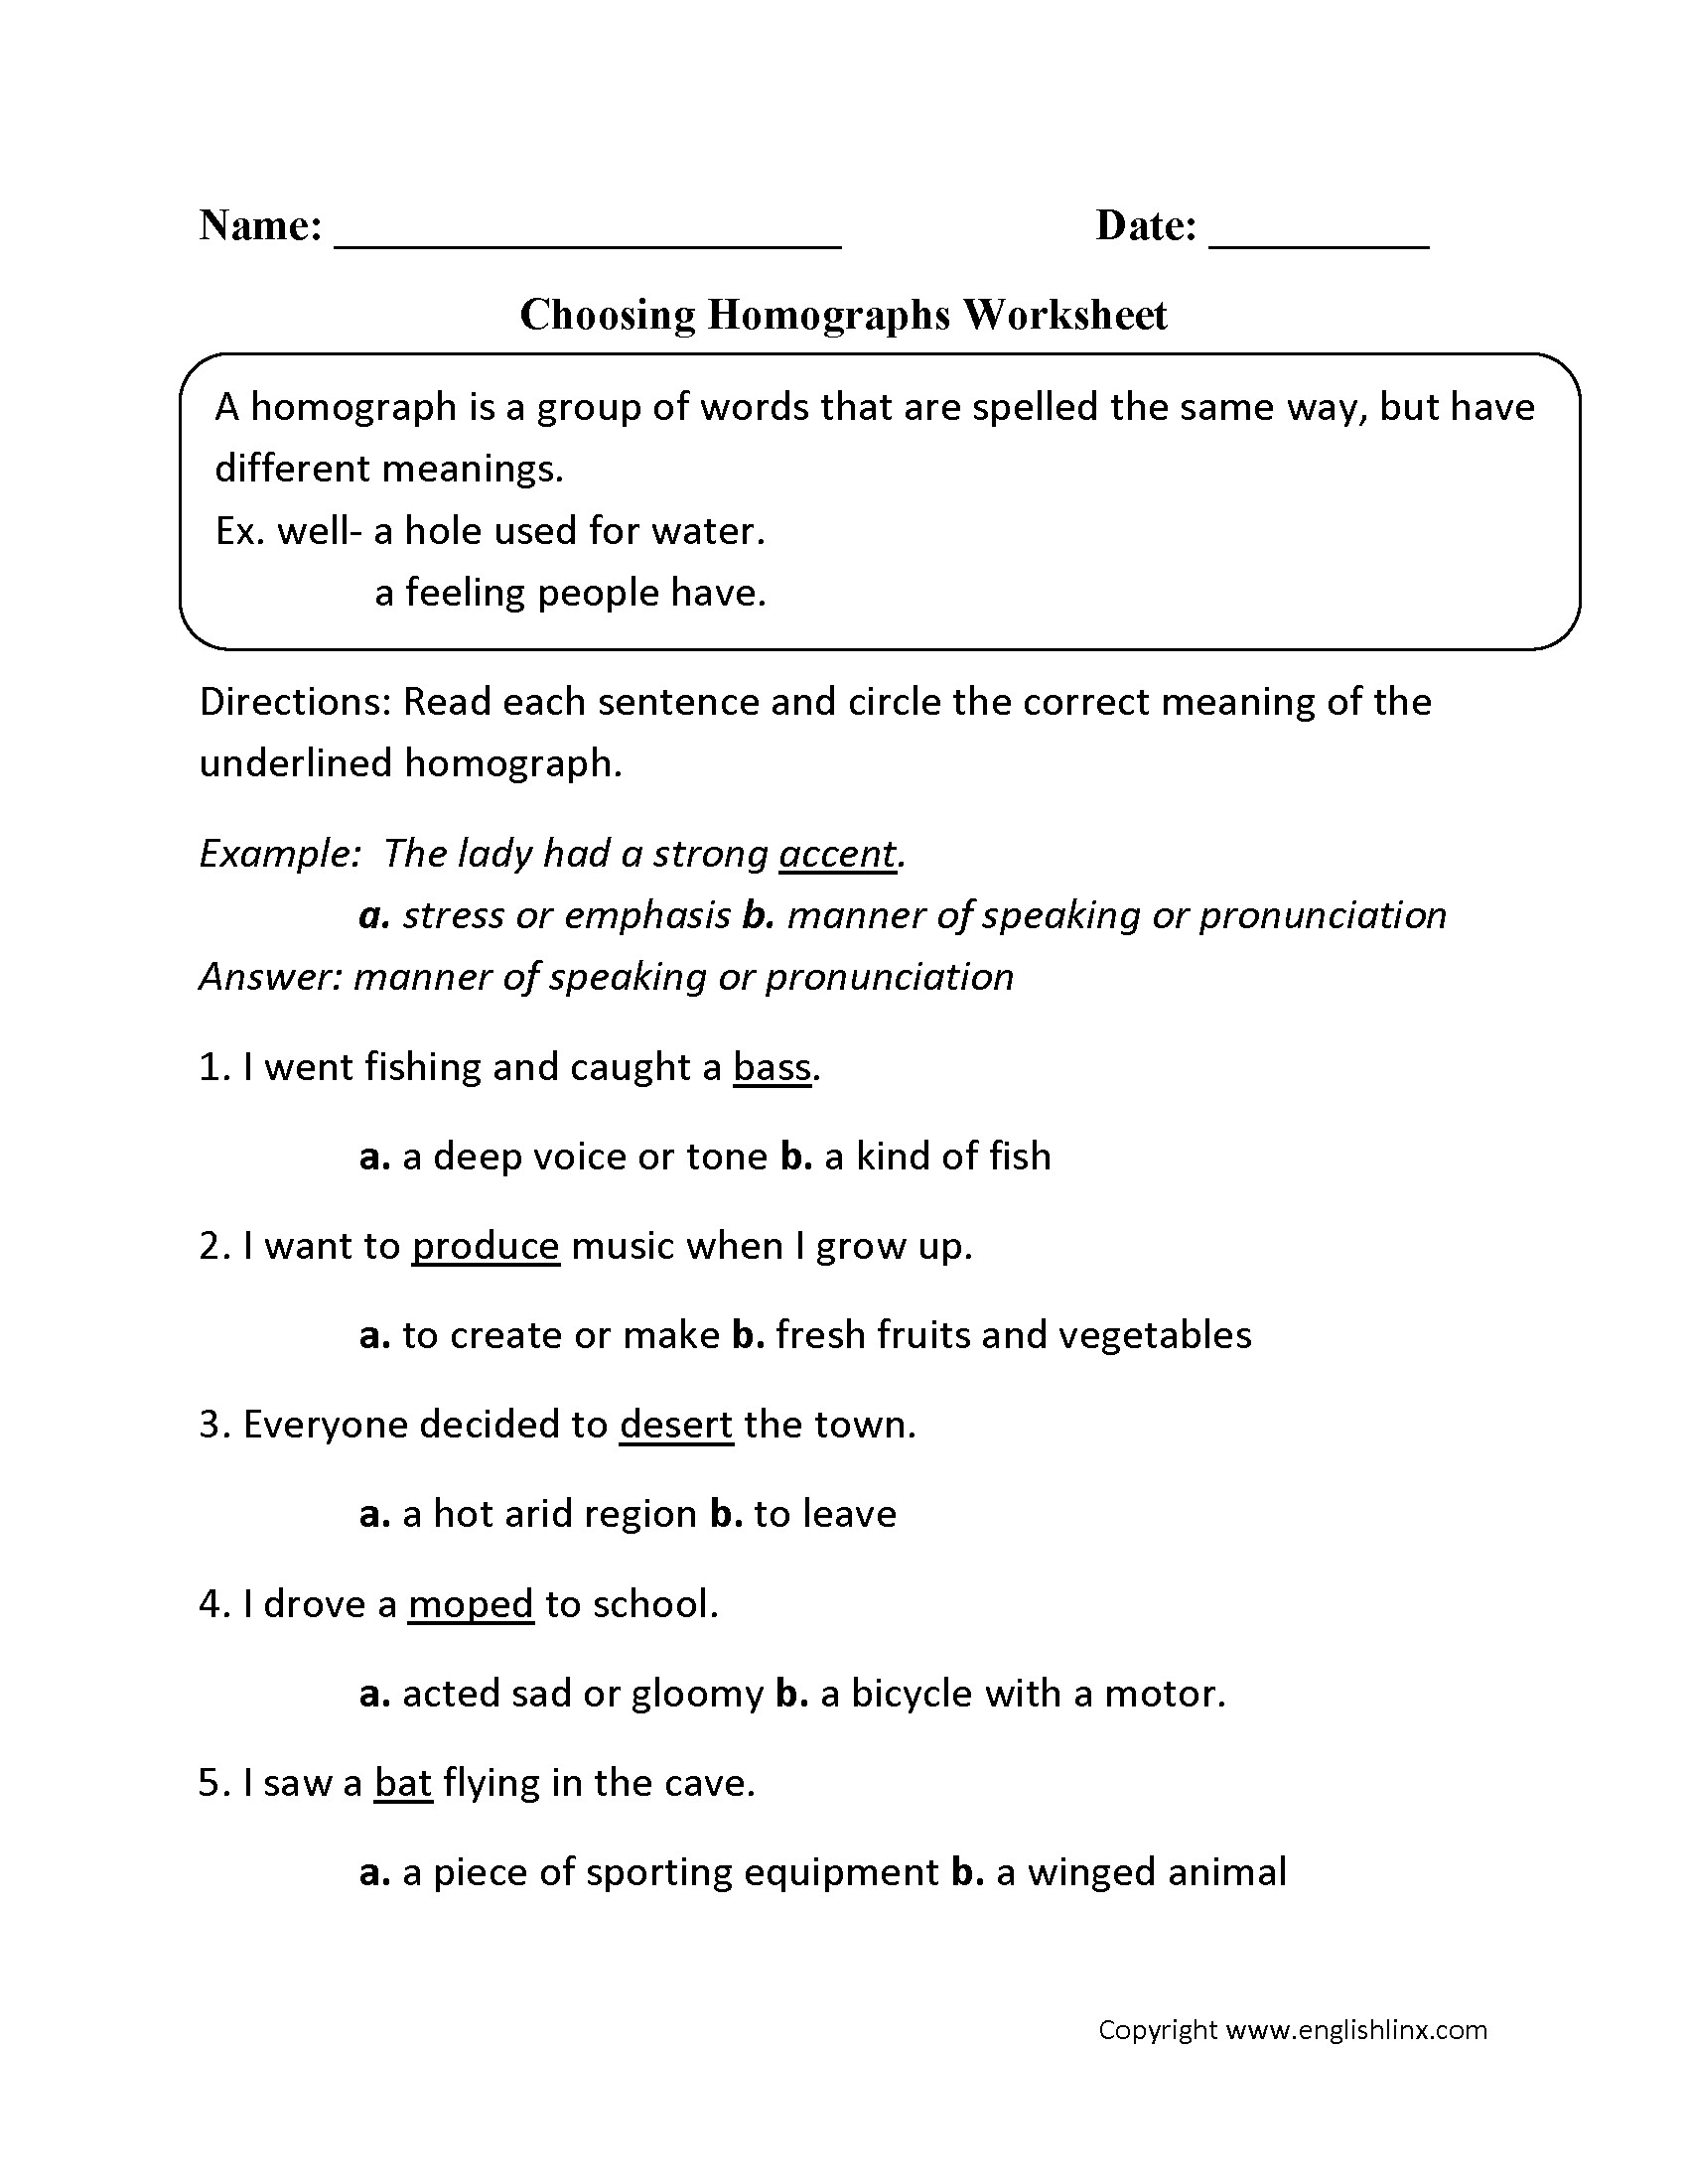 Homograph Worksheets 5th Grade Worksheets Homographs